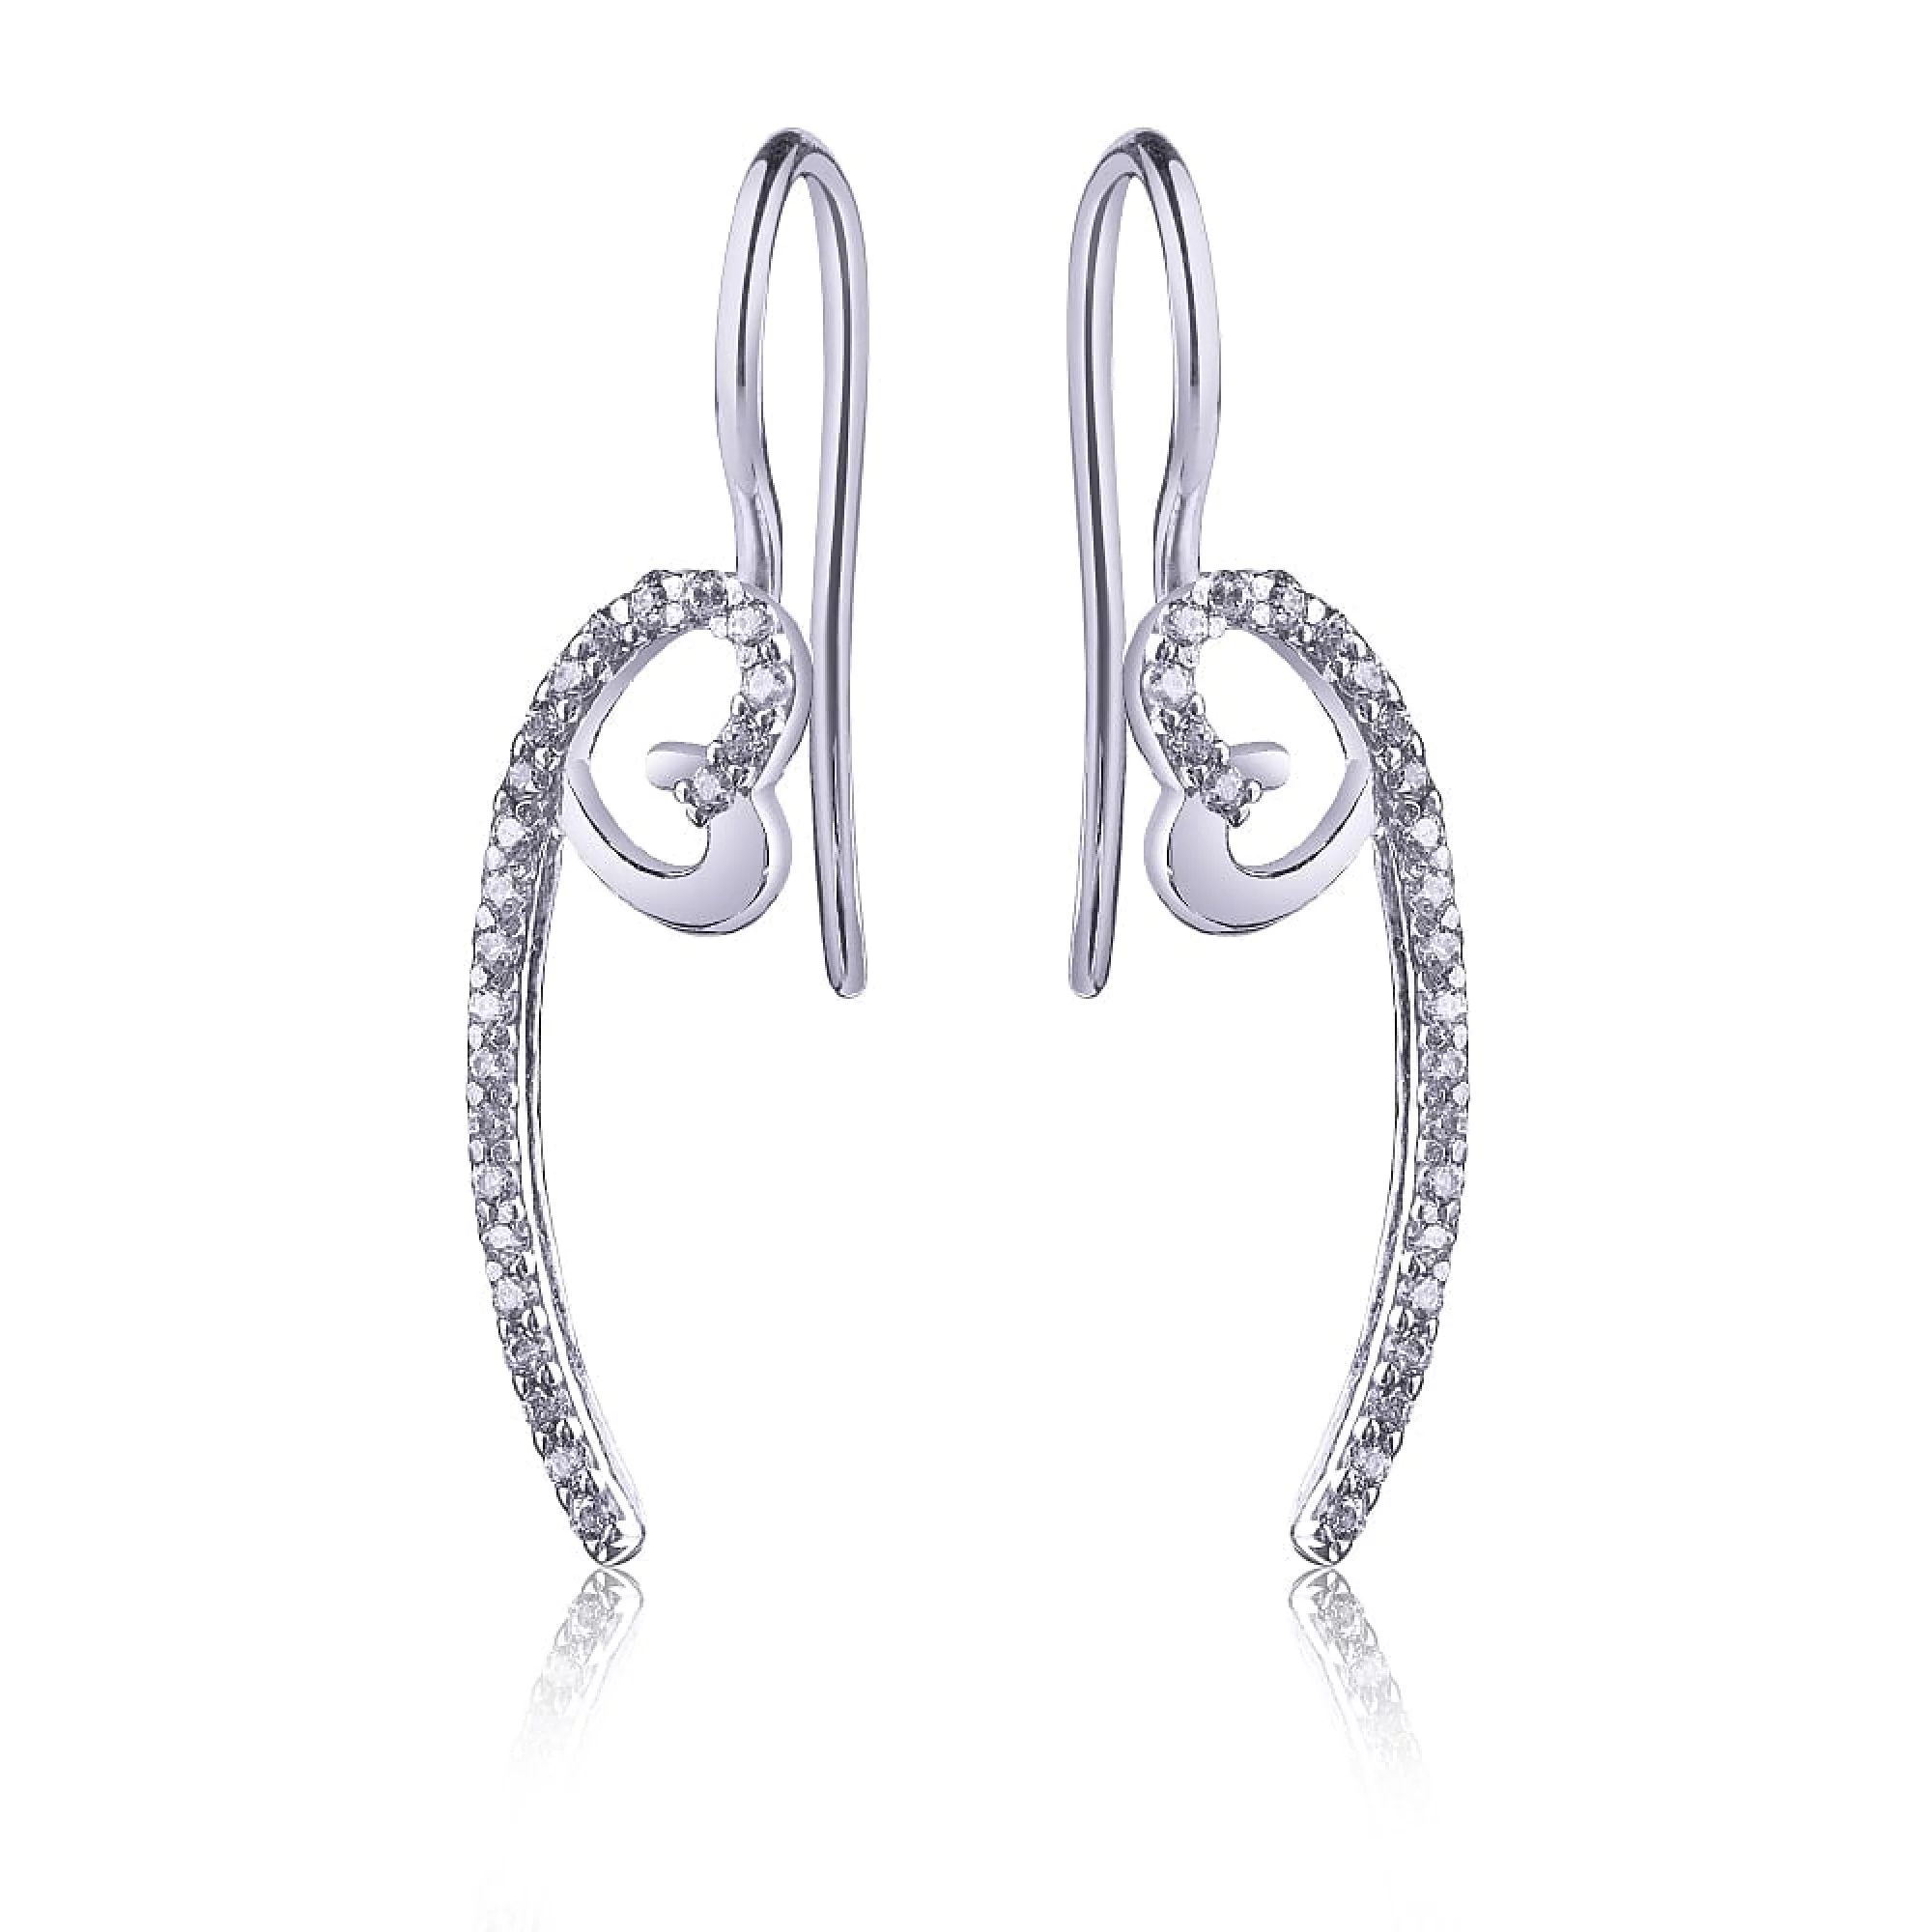 Срібні сережки-петлі з цирконієм - 411545 – зображення 1